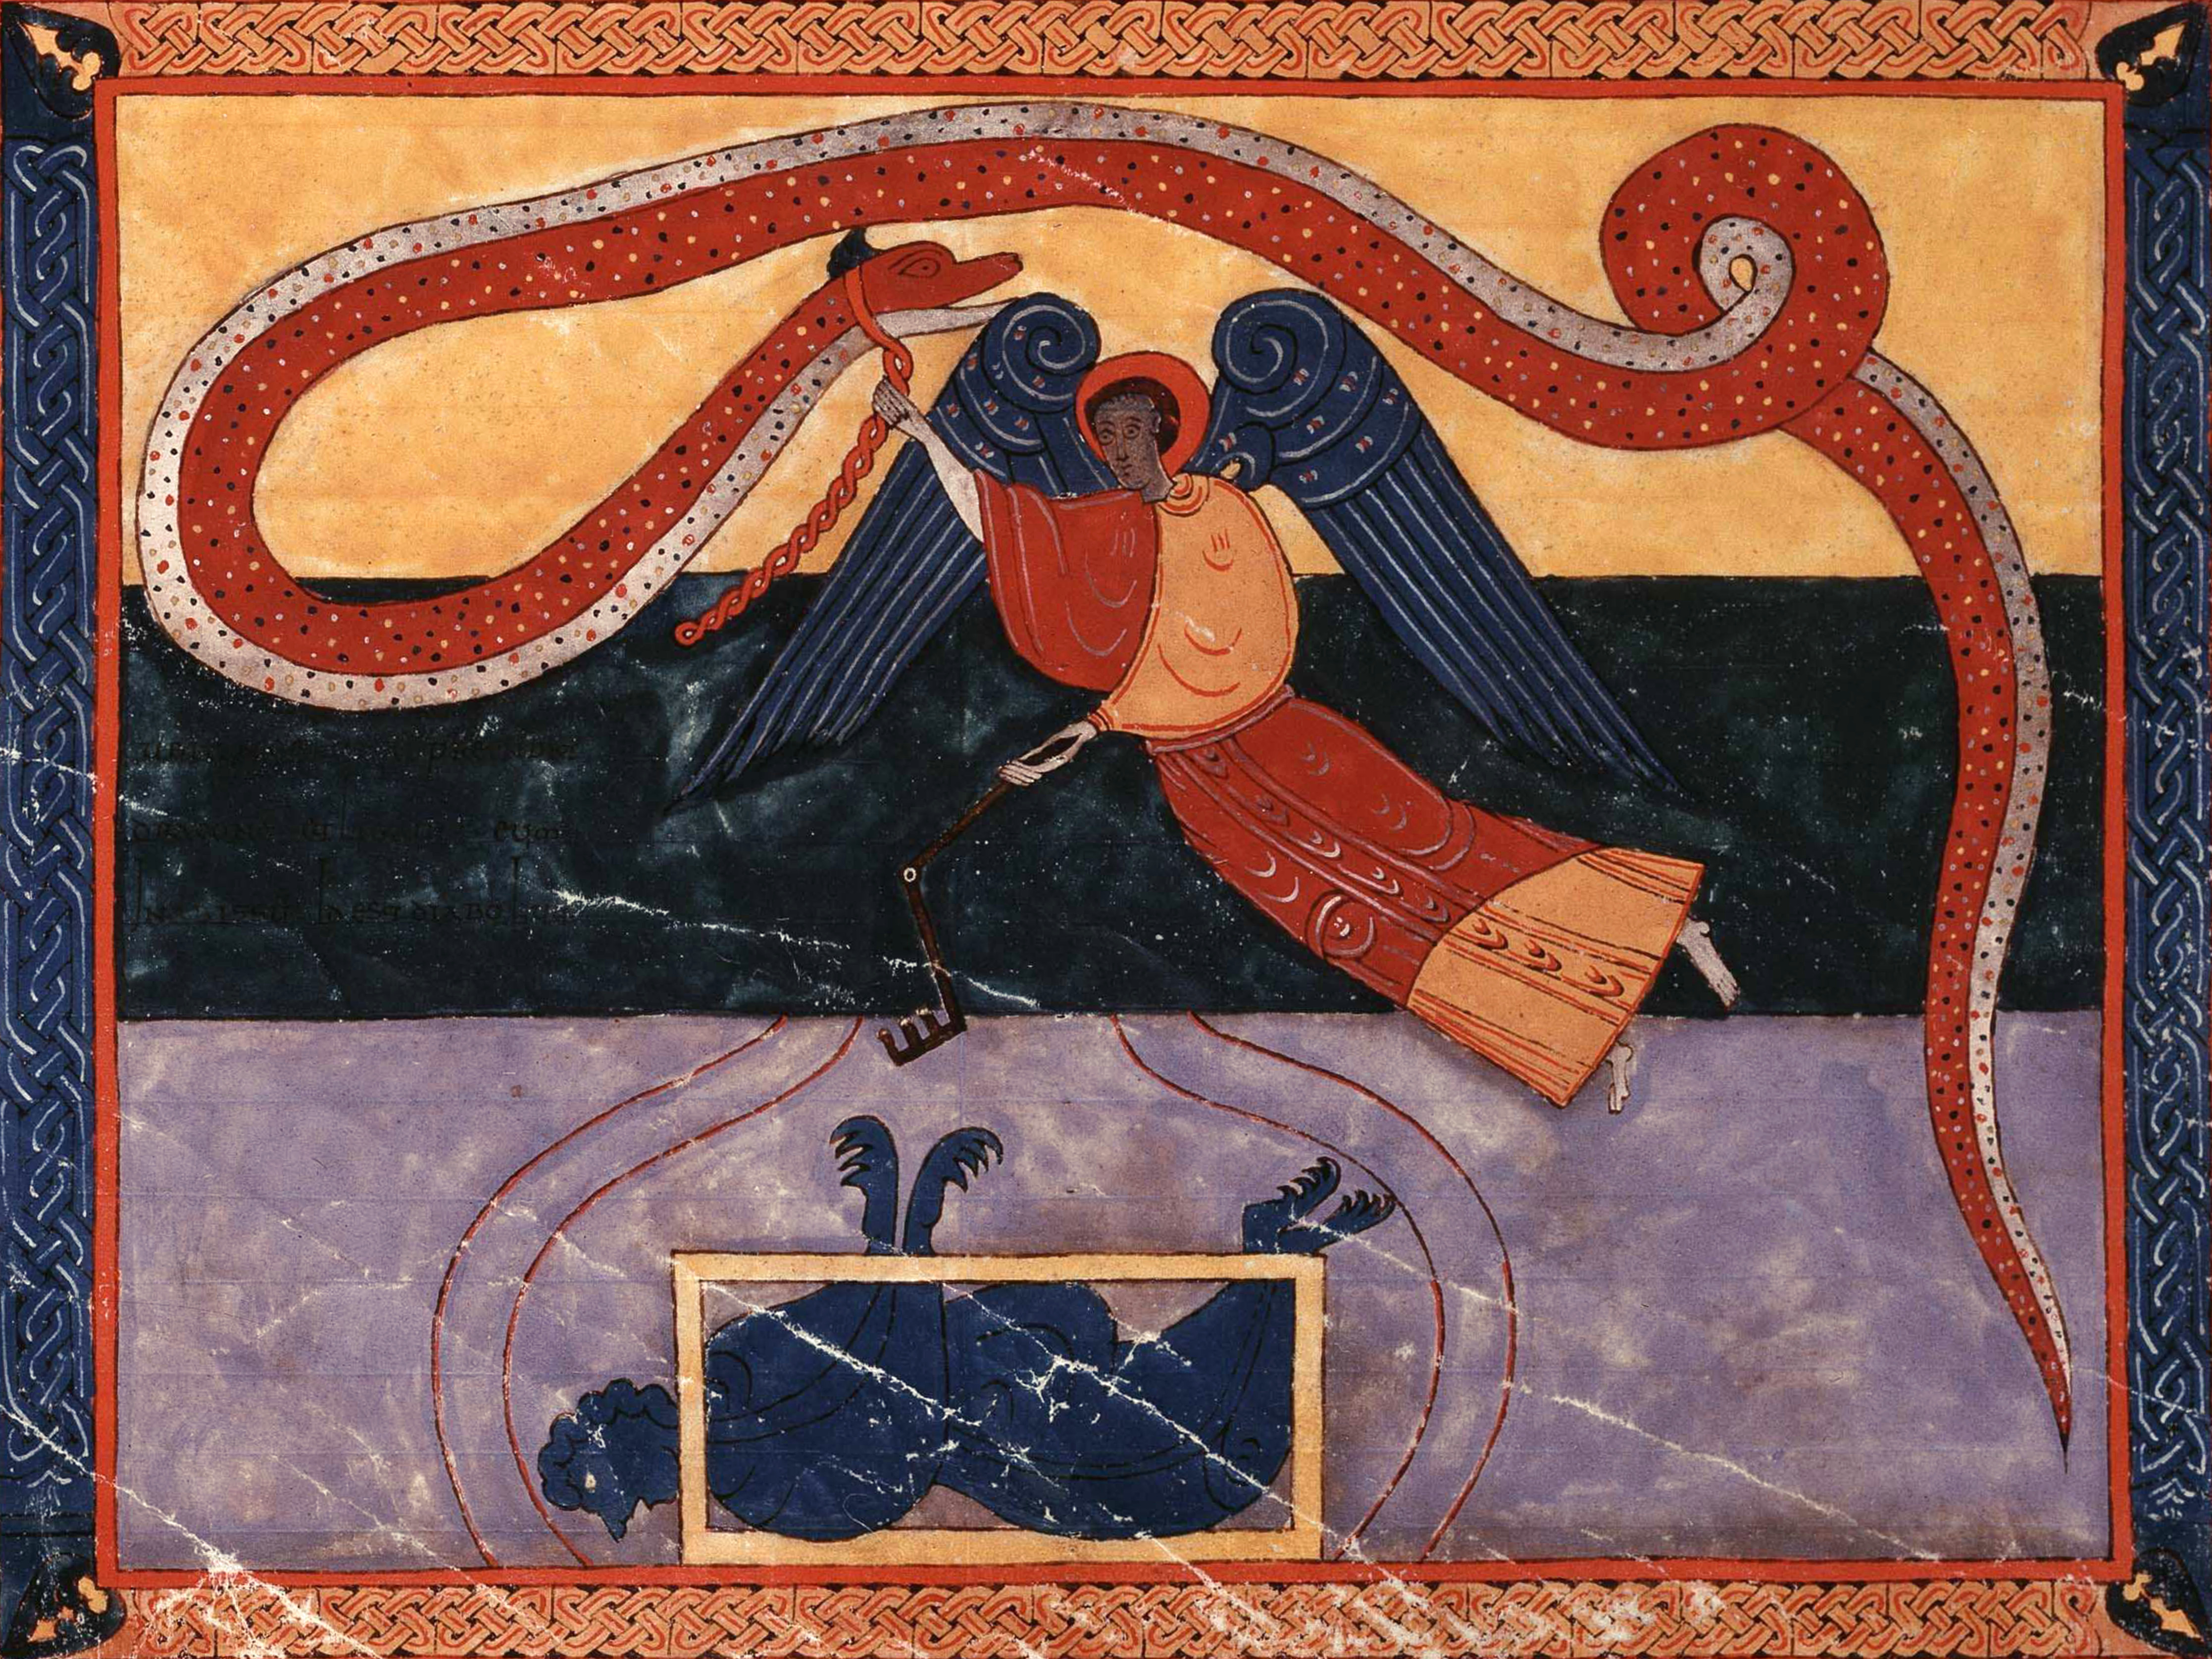 Beatus de Facundus, p. 487 – Un ange, porteur de la clef de l’Abîme, enchaîne le Dragon et le jette dans l’Abîme pour mille ans (Ap 20, 1-3).